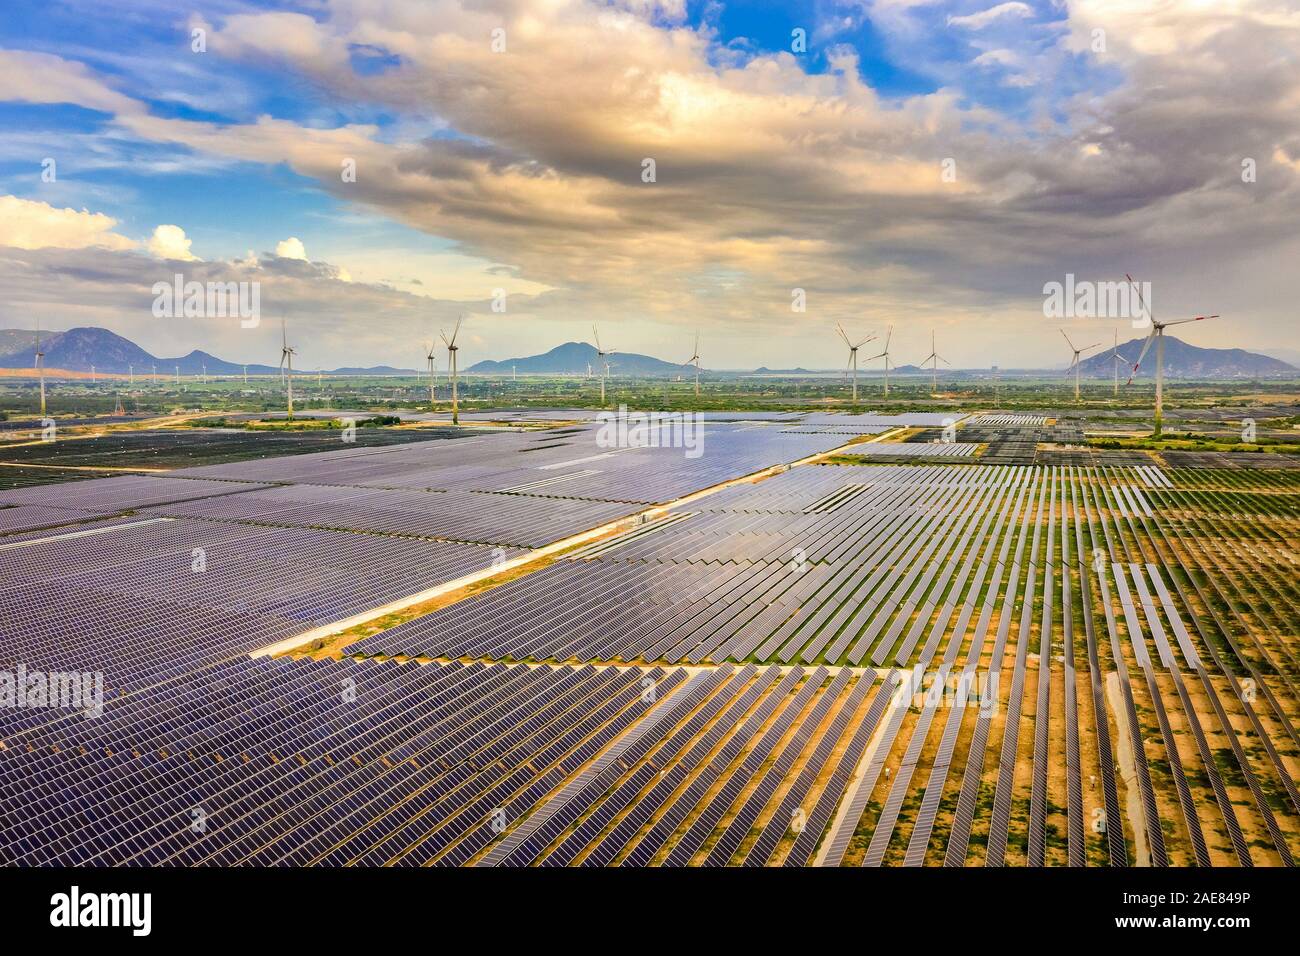 Vue aérienne du panneau solaire, photovoltaïque, source alternative d'électricité avec des éoliennes, Phan Rang, Ninh Thuan, Vietnam Banque D'Images